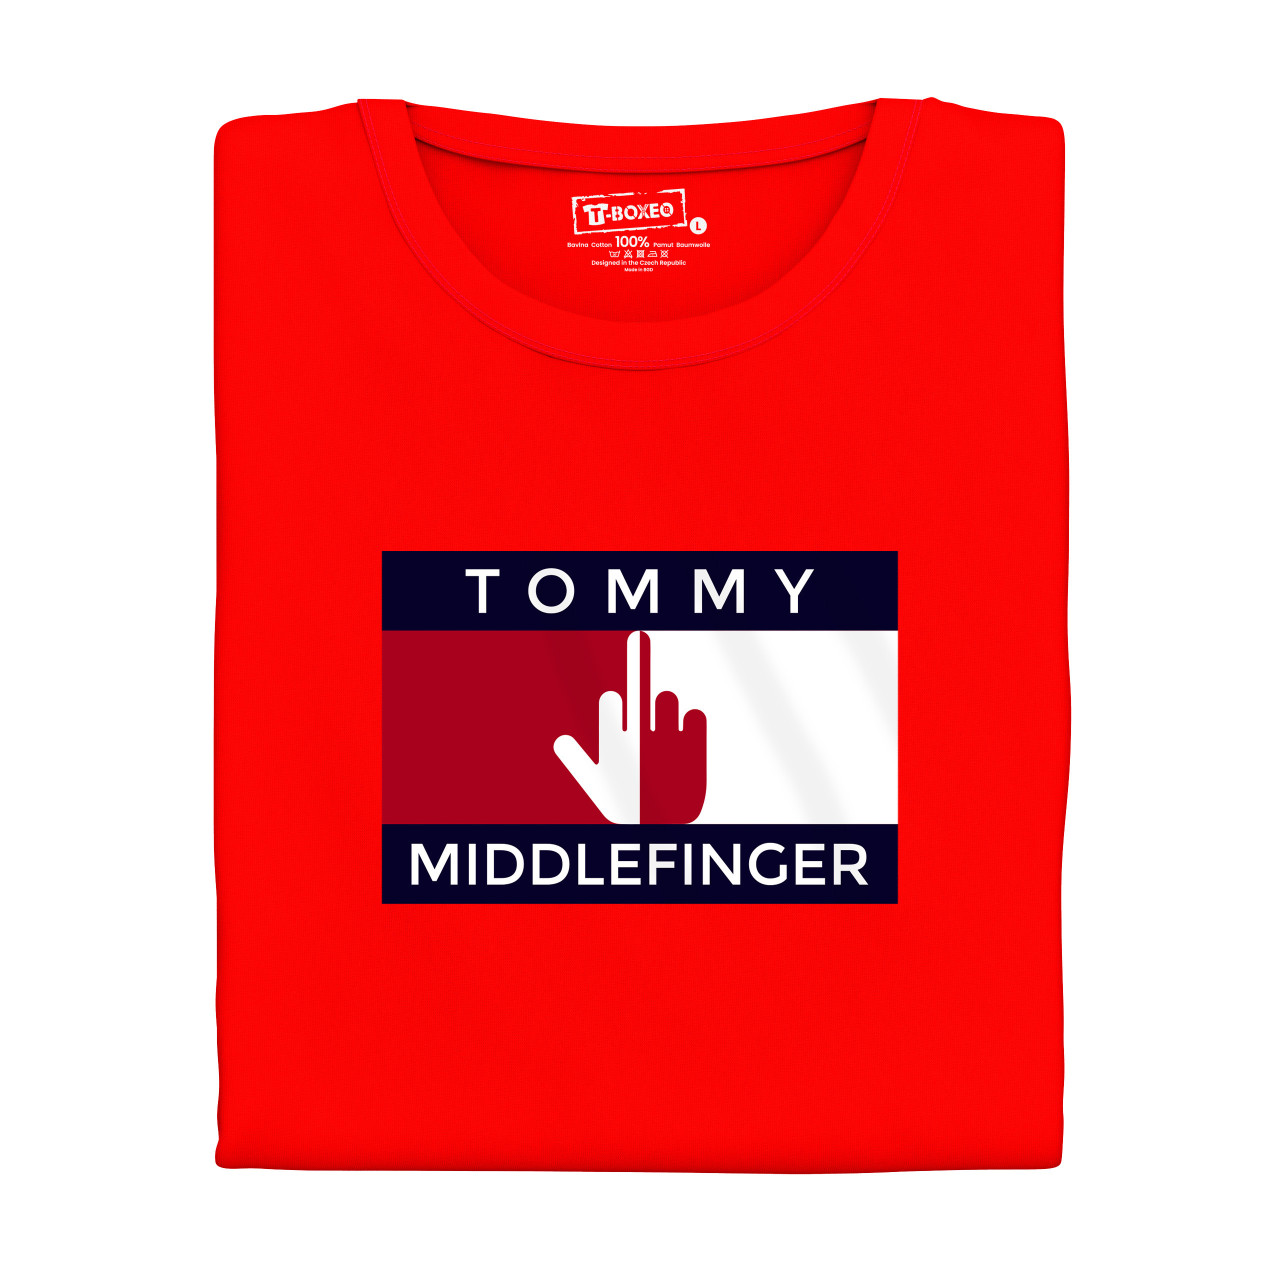 Pánské tričko s potiskem “Tommy Middlefinger”